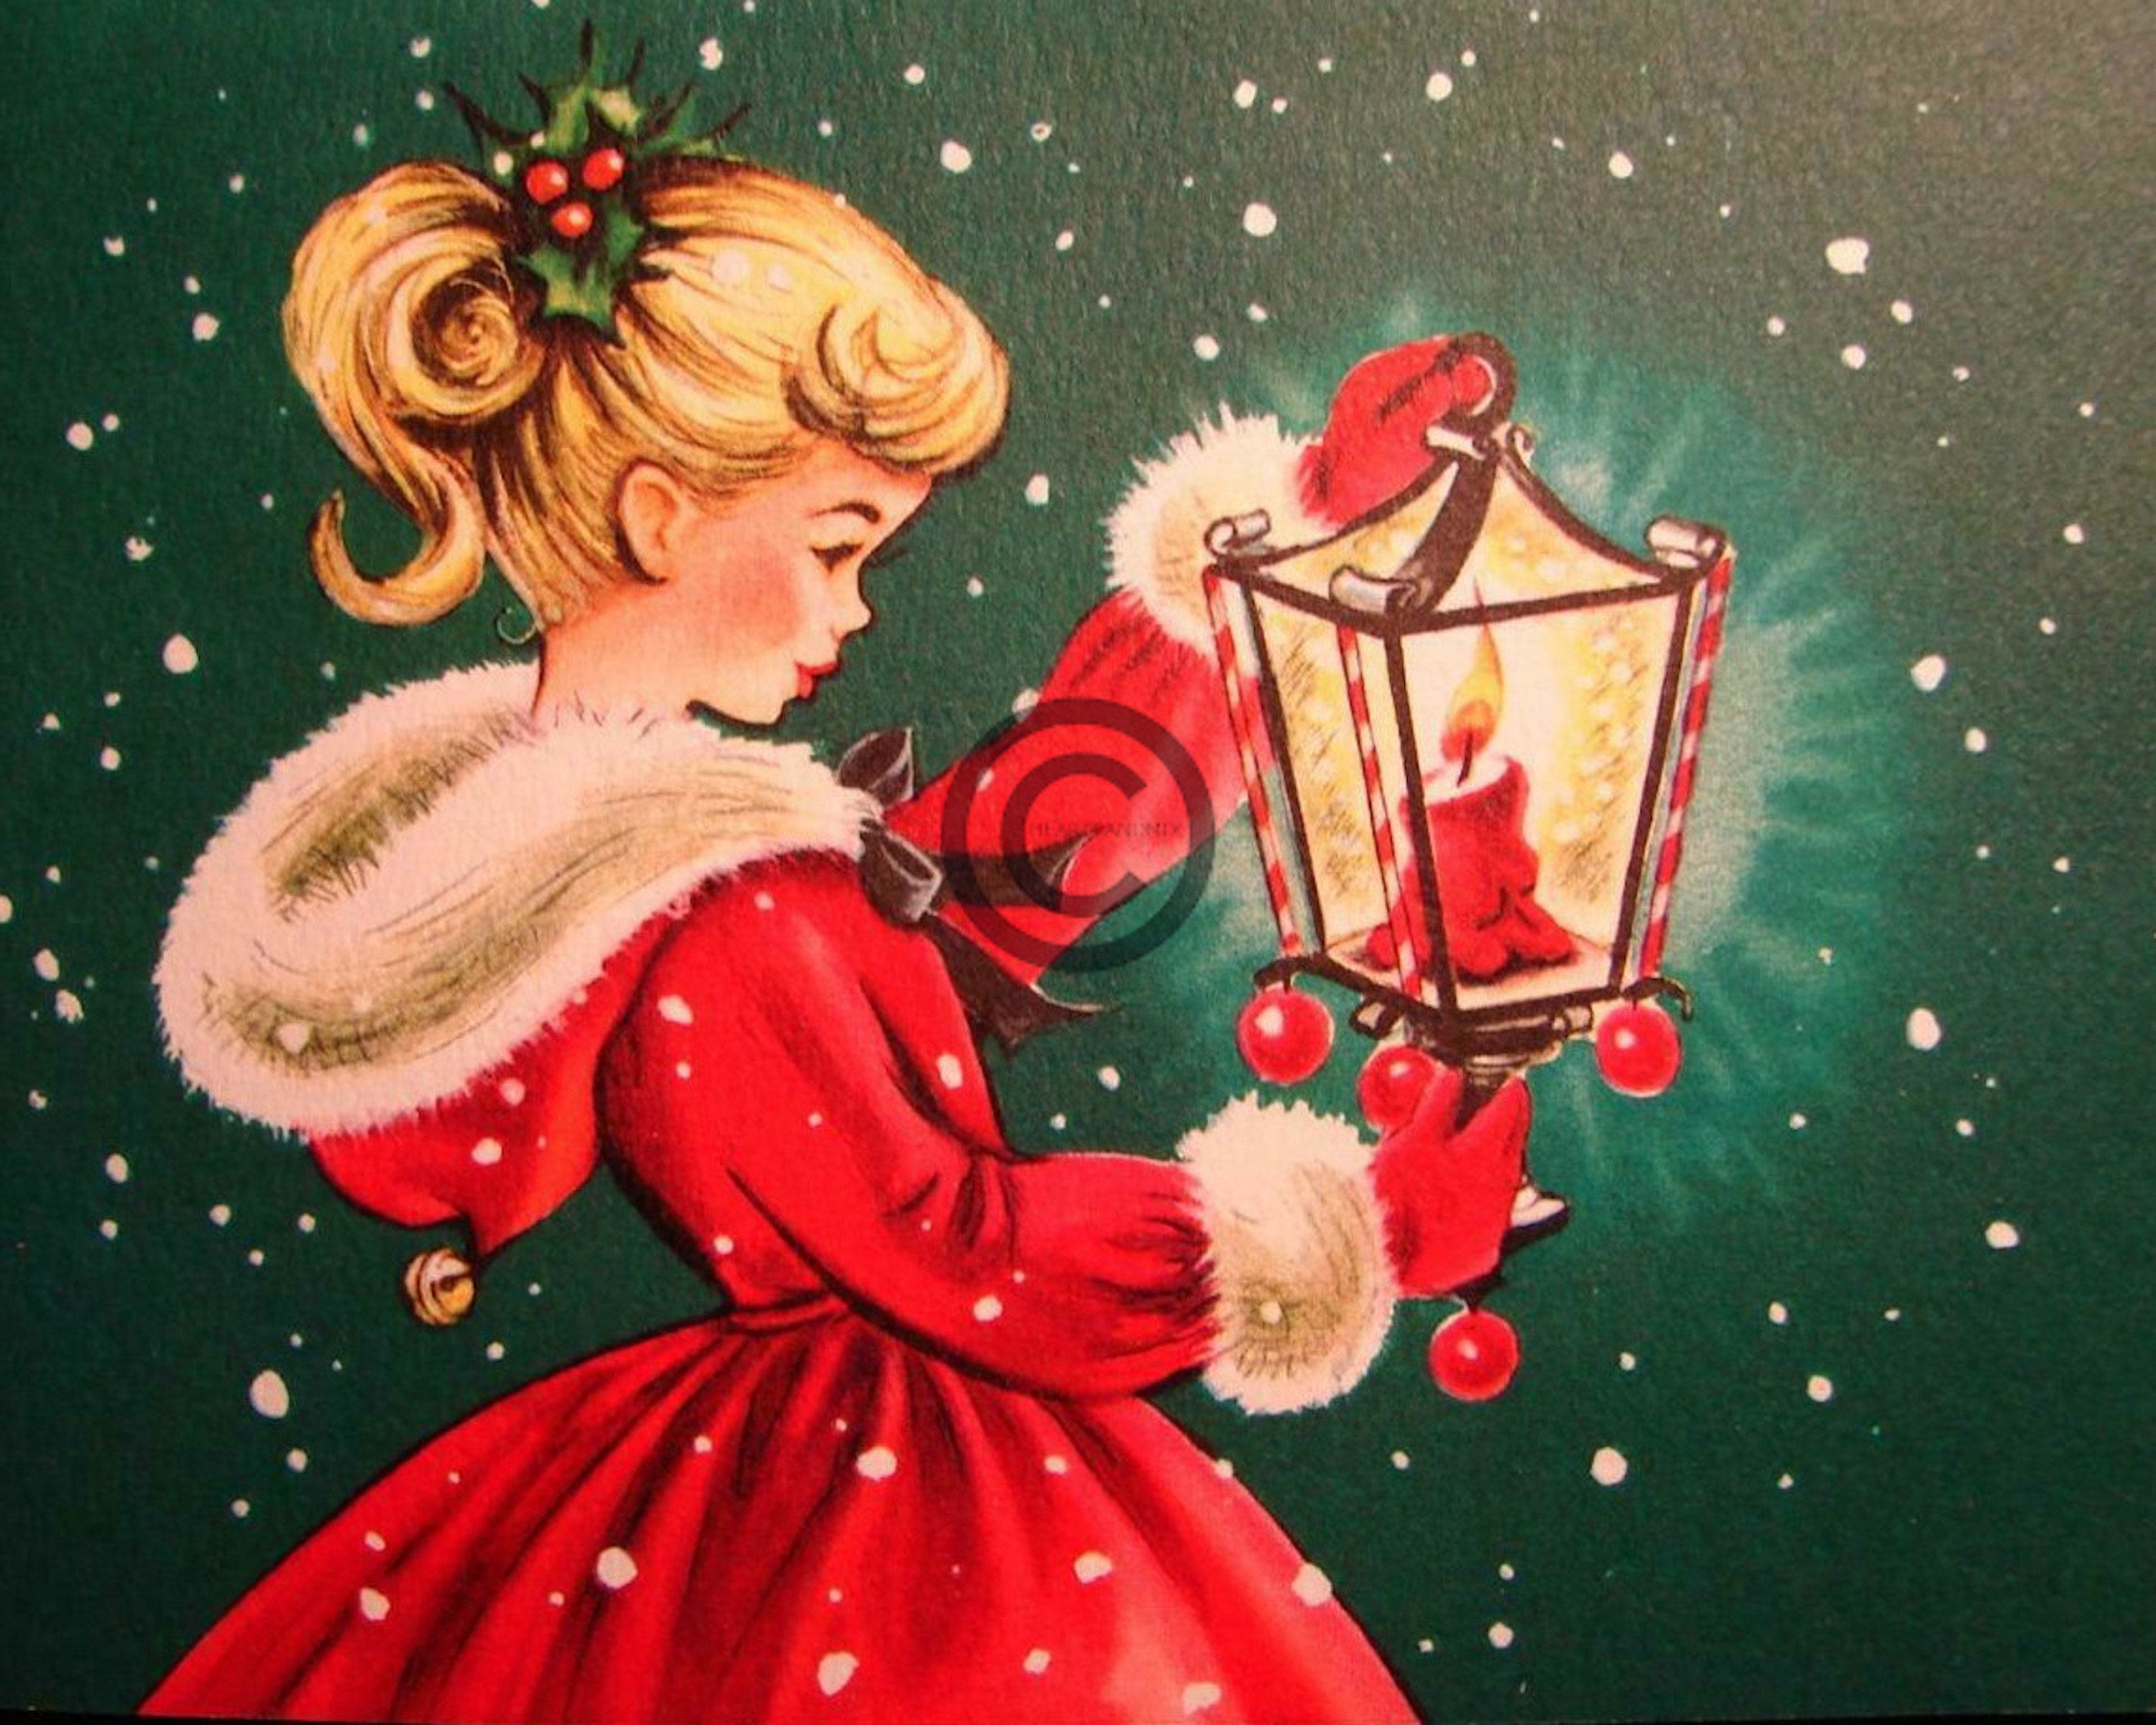 Vintage Christmas Girl and Candle Lantern Digital Image Wall